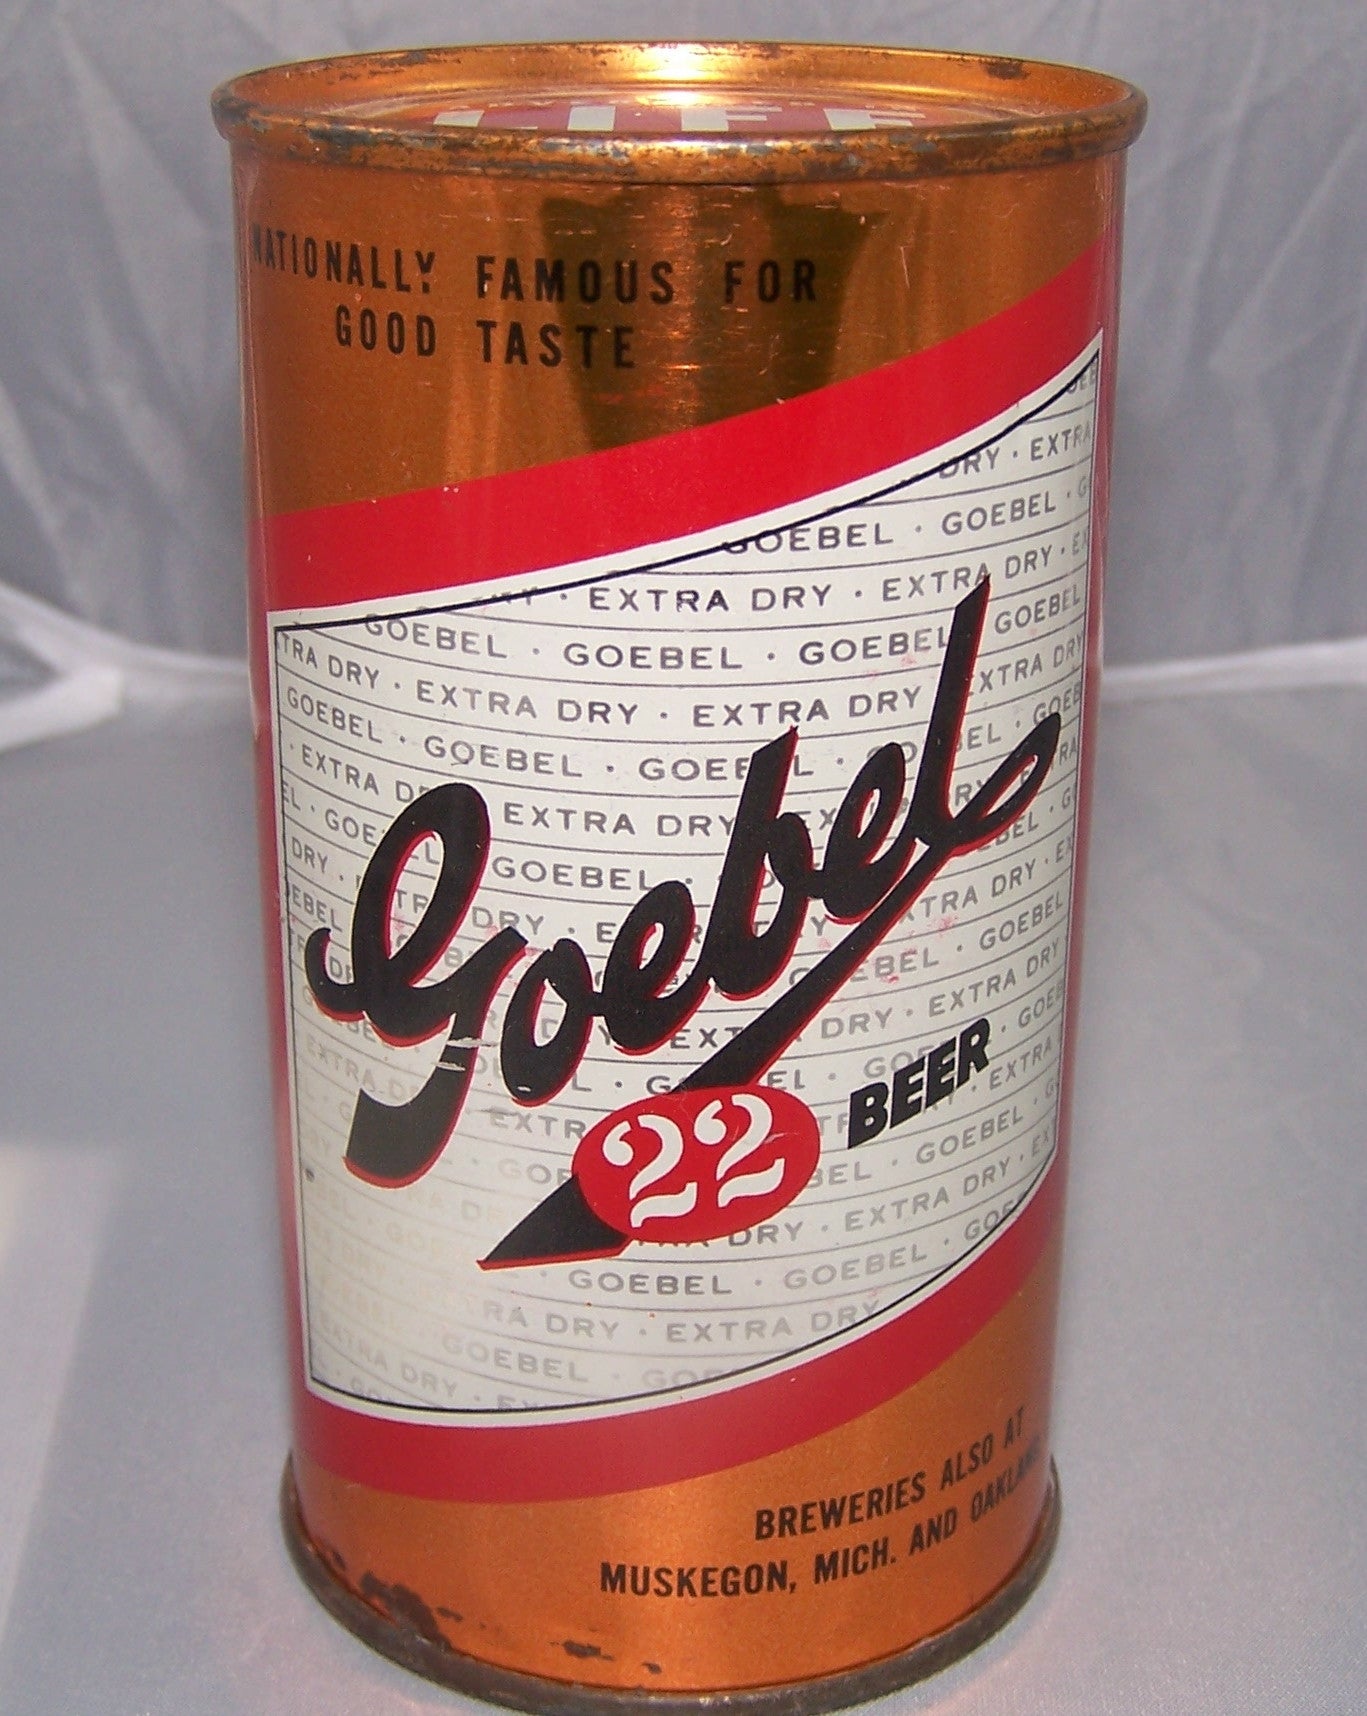 Goebel 22 Beer, USBC 71-2, Grade 1 Sold on 2/13/15